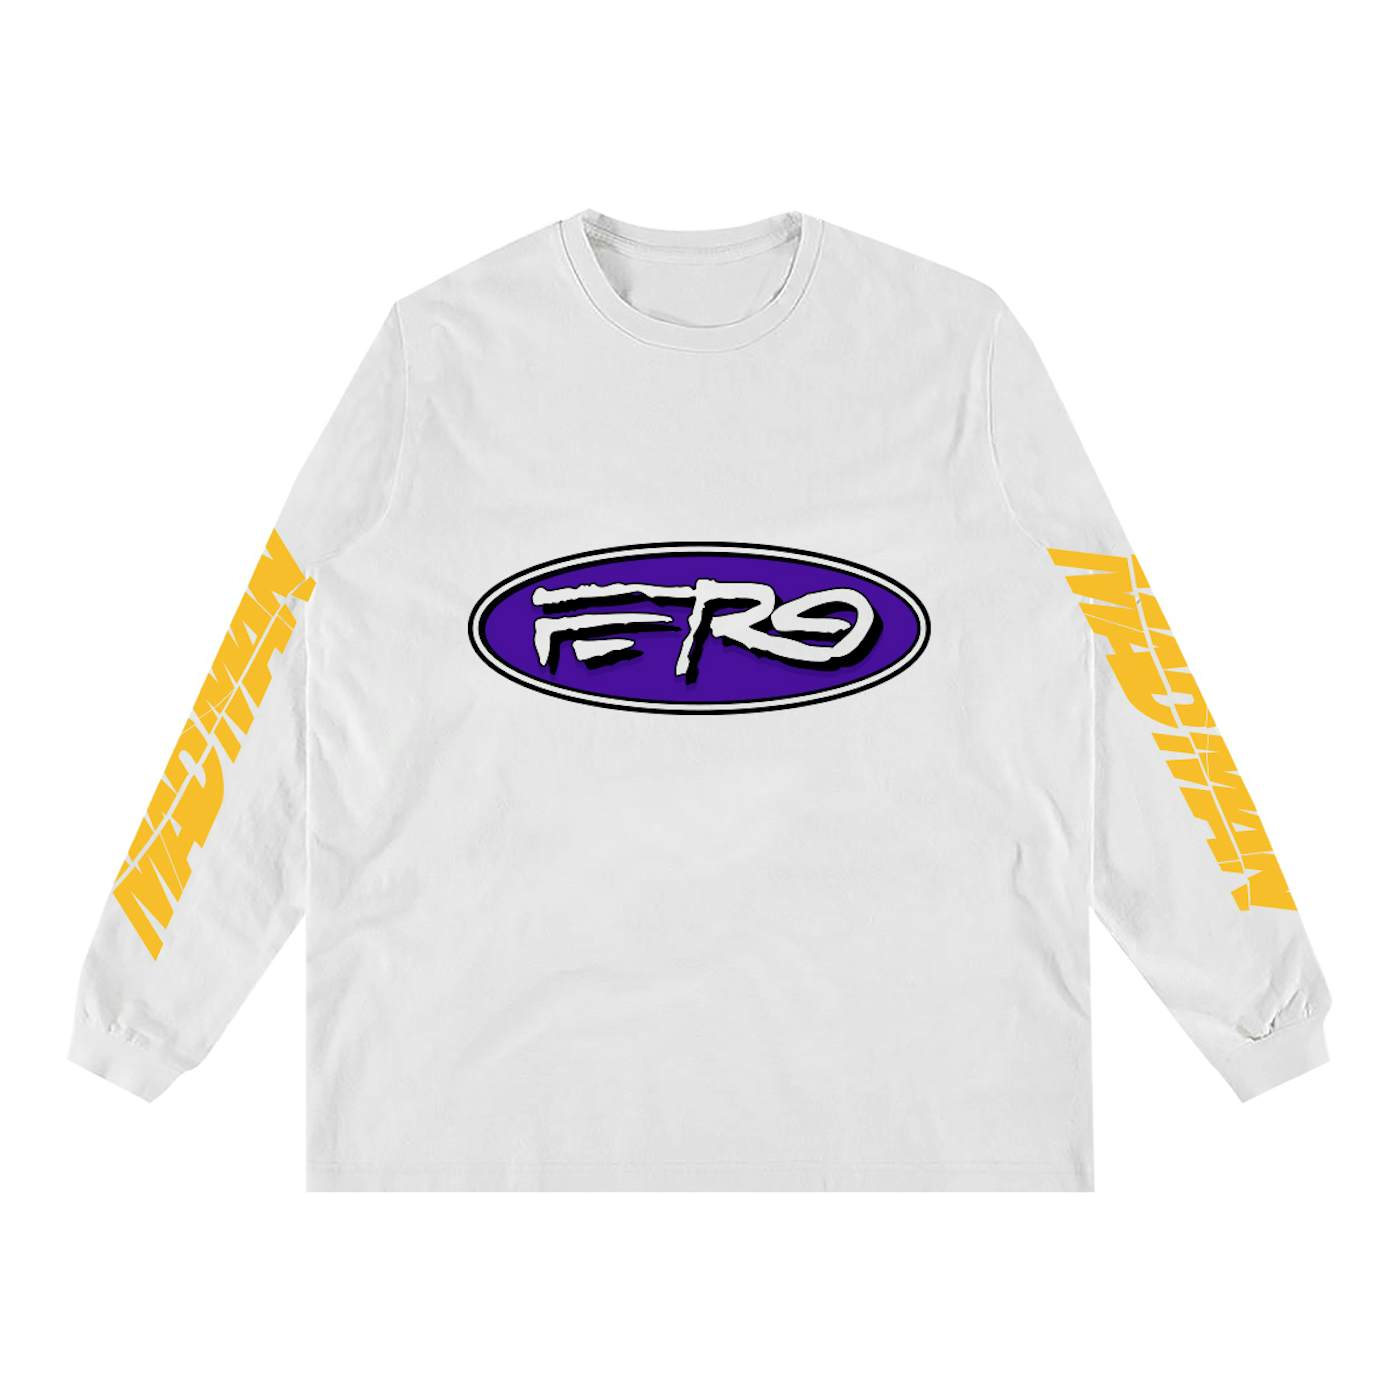 A$AP Ferg LS Tour T-shirt